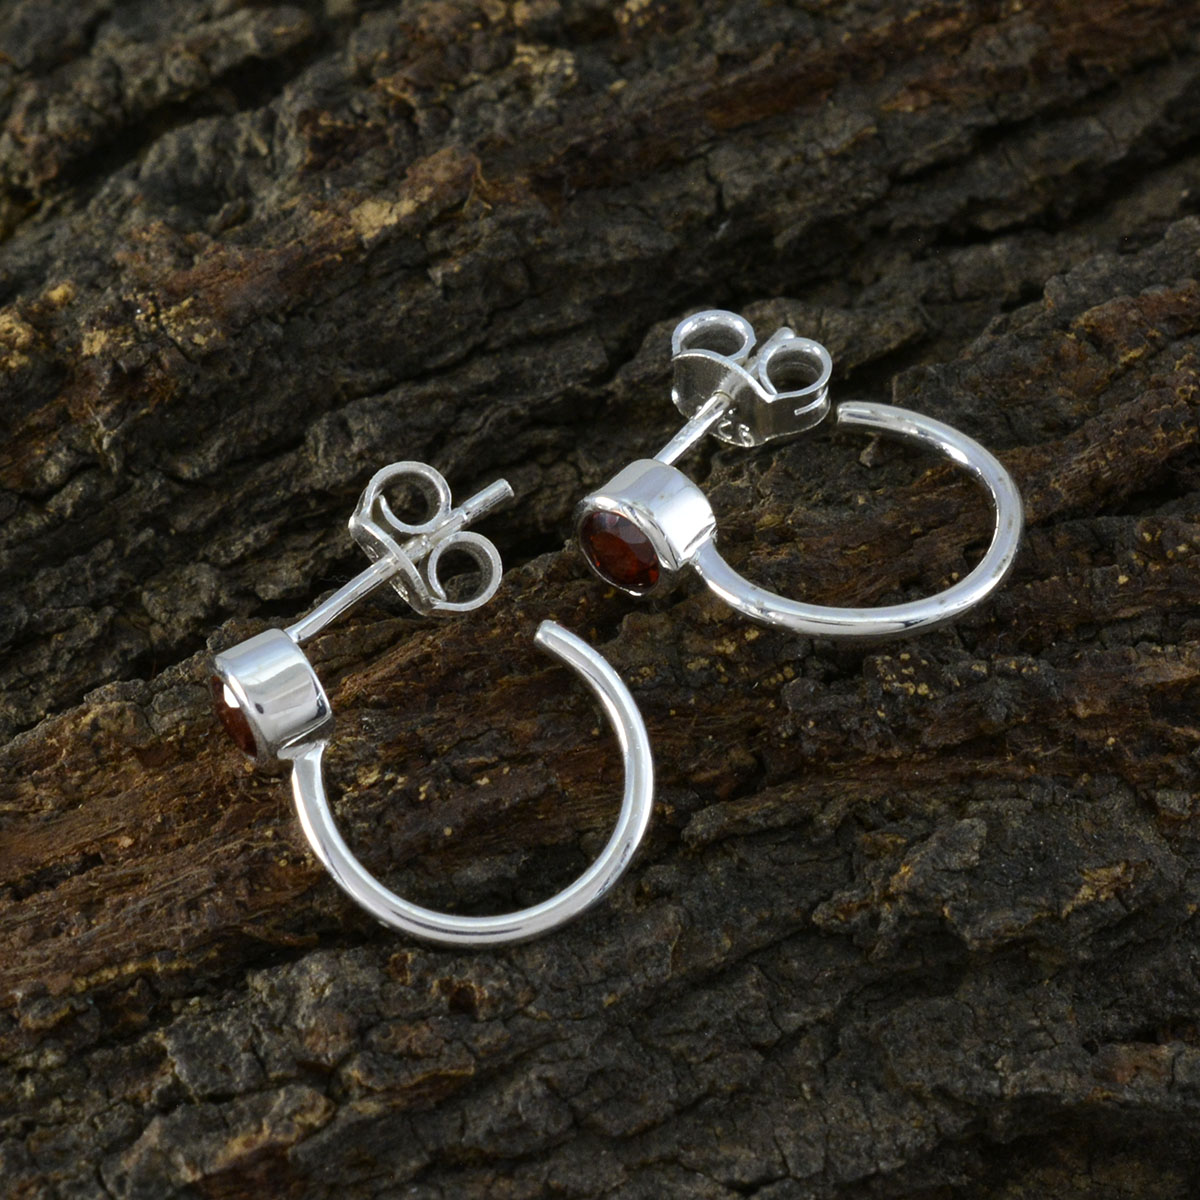 Riyo Ravishing Sterling Silver Earring For Sister Garnet Earring Bezel Setting Red Earring Stud Earring